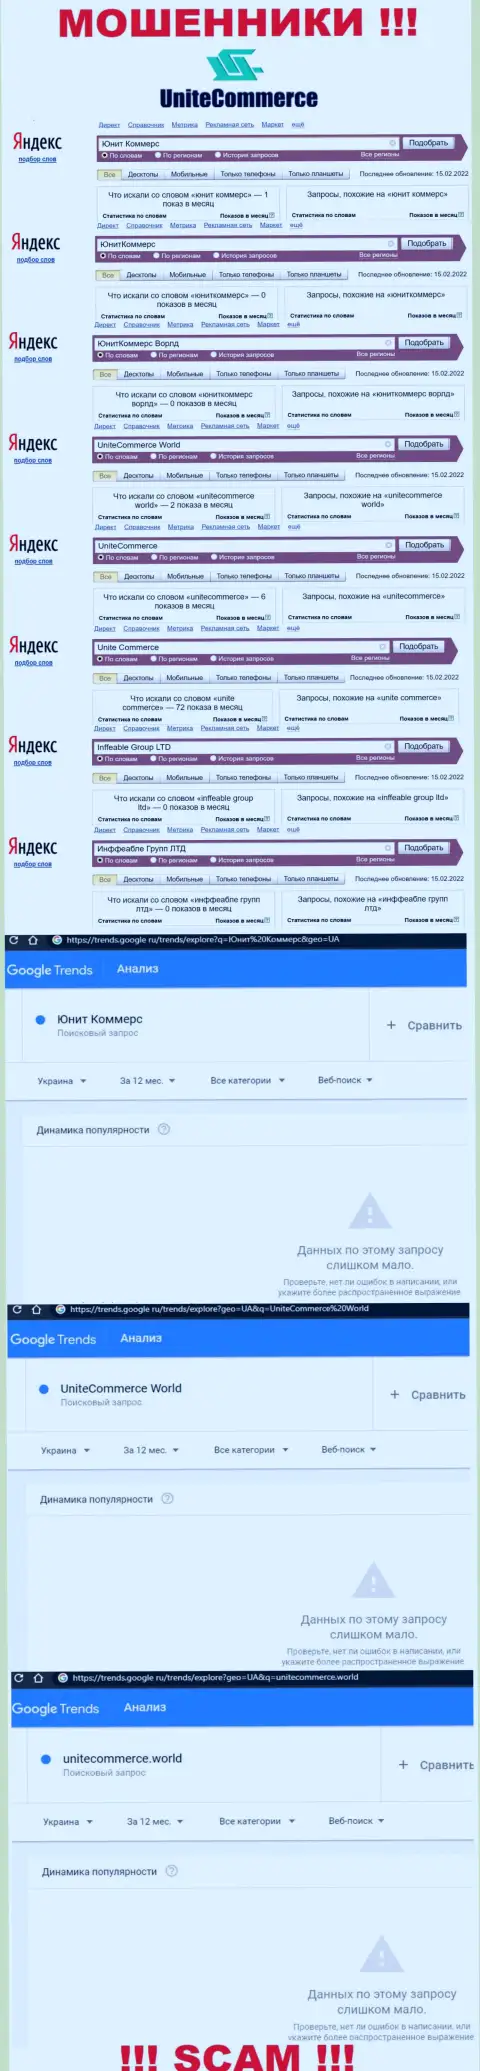 Показатели онлайн запросов по бренду мошенников Юнит Коммерс